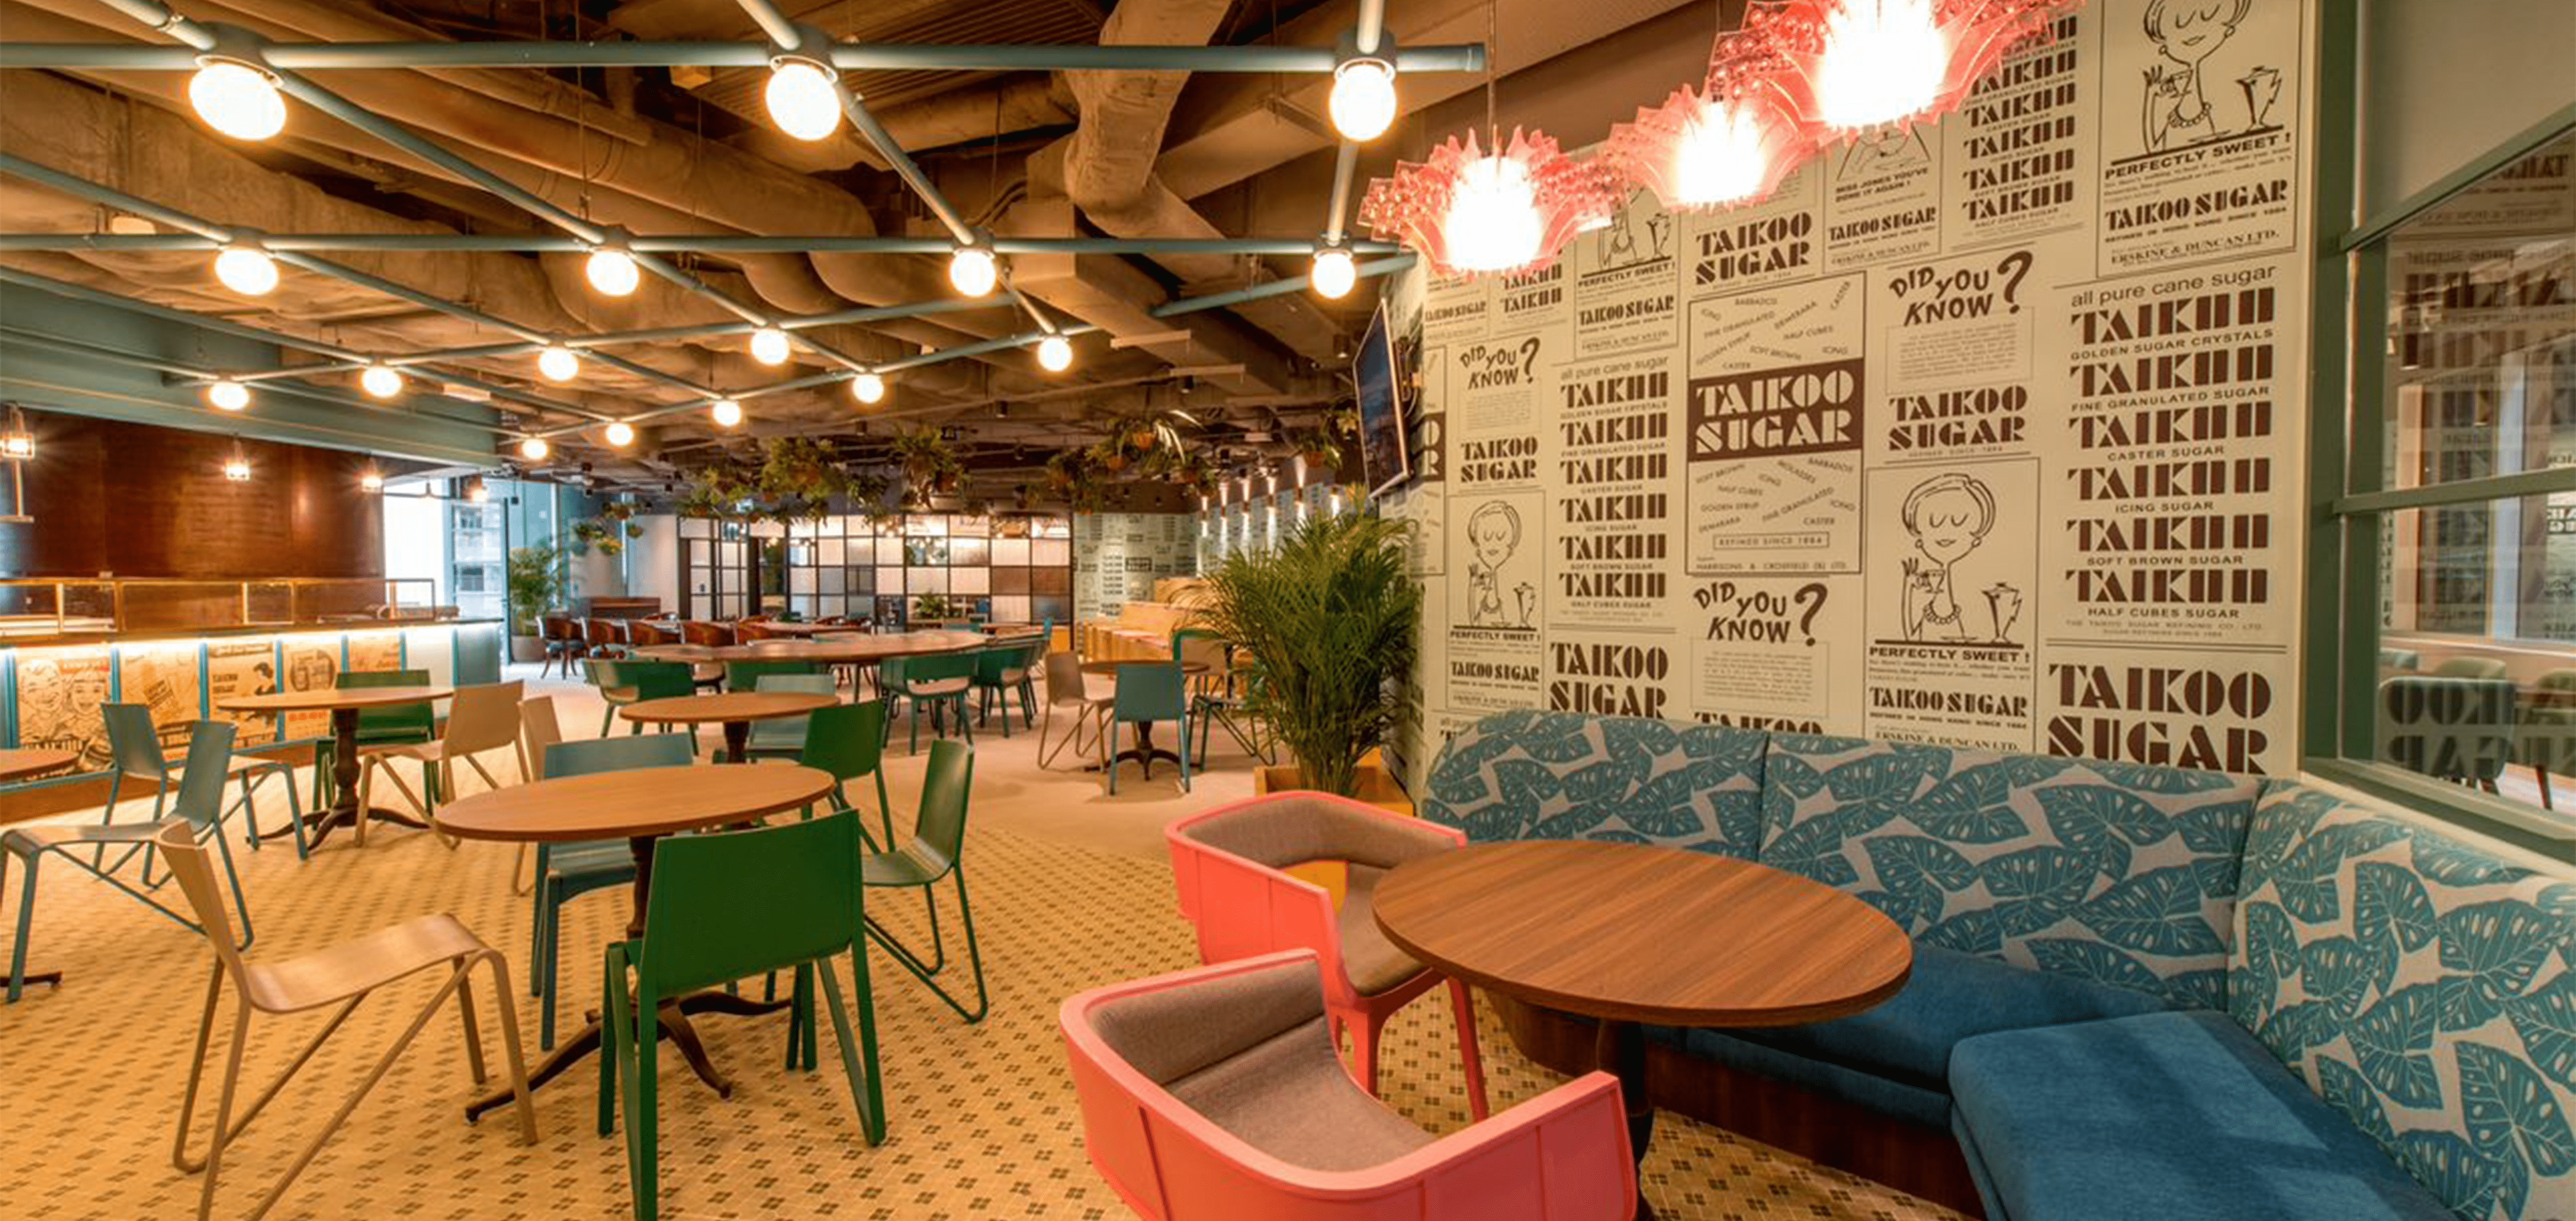 Café Space for Casual Events Blueprint HK